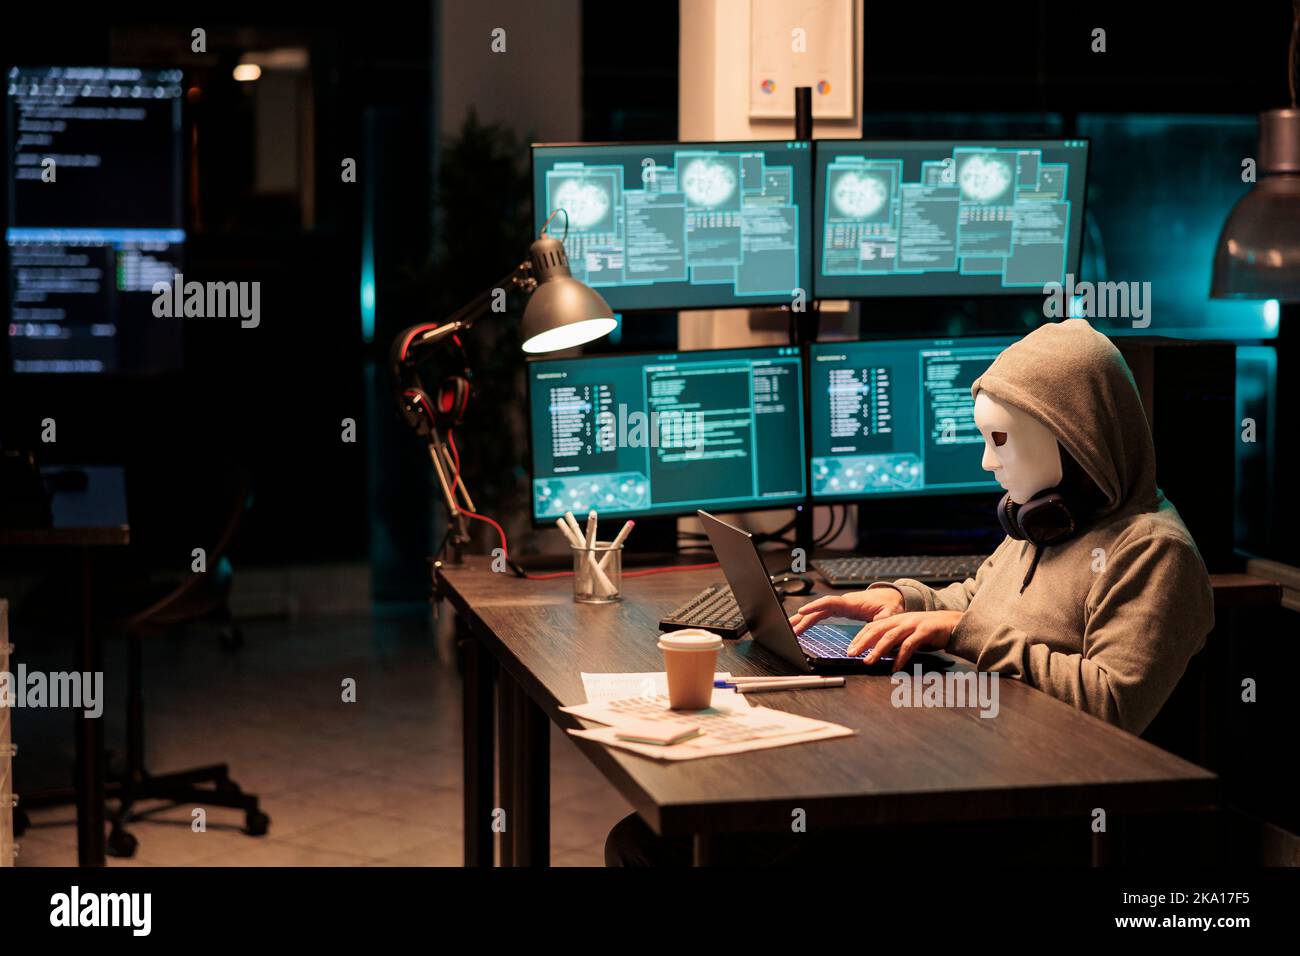 Betrüger mit Maske und Haube Hacking Sicherheitsserver, Installation von Viren, um Computer-Malware zu erstellen und stehlen große Online-Daten. Maskierter krimineller Hacker, der nachts das Netowrk-System zerbricht. Stockfoto